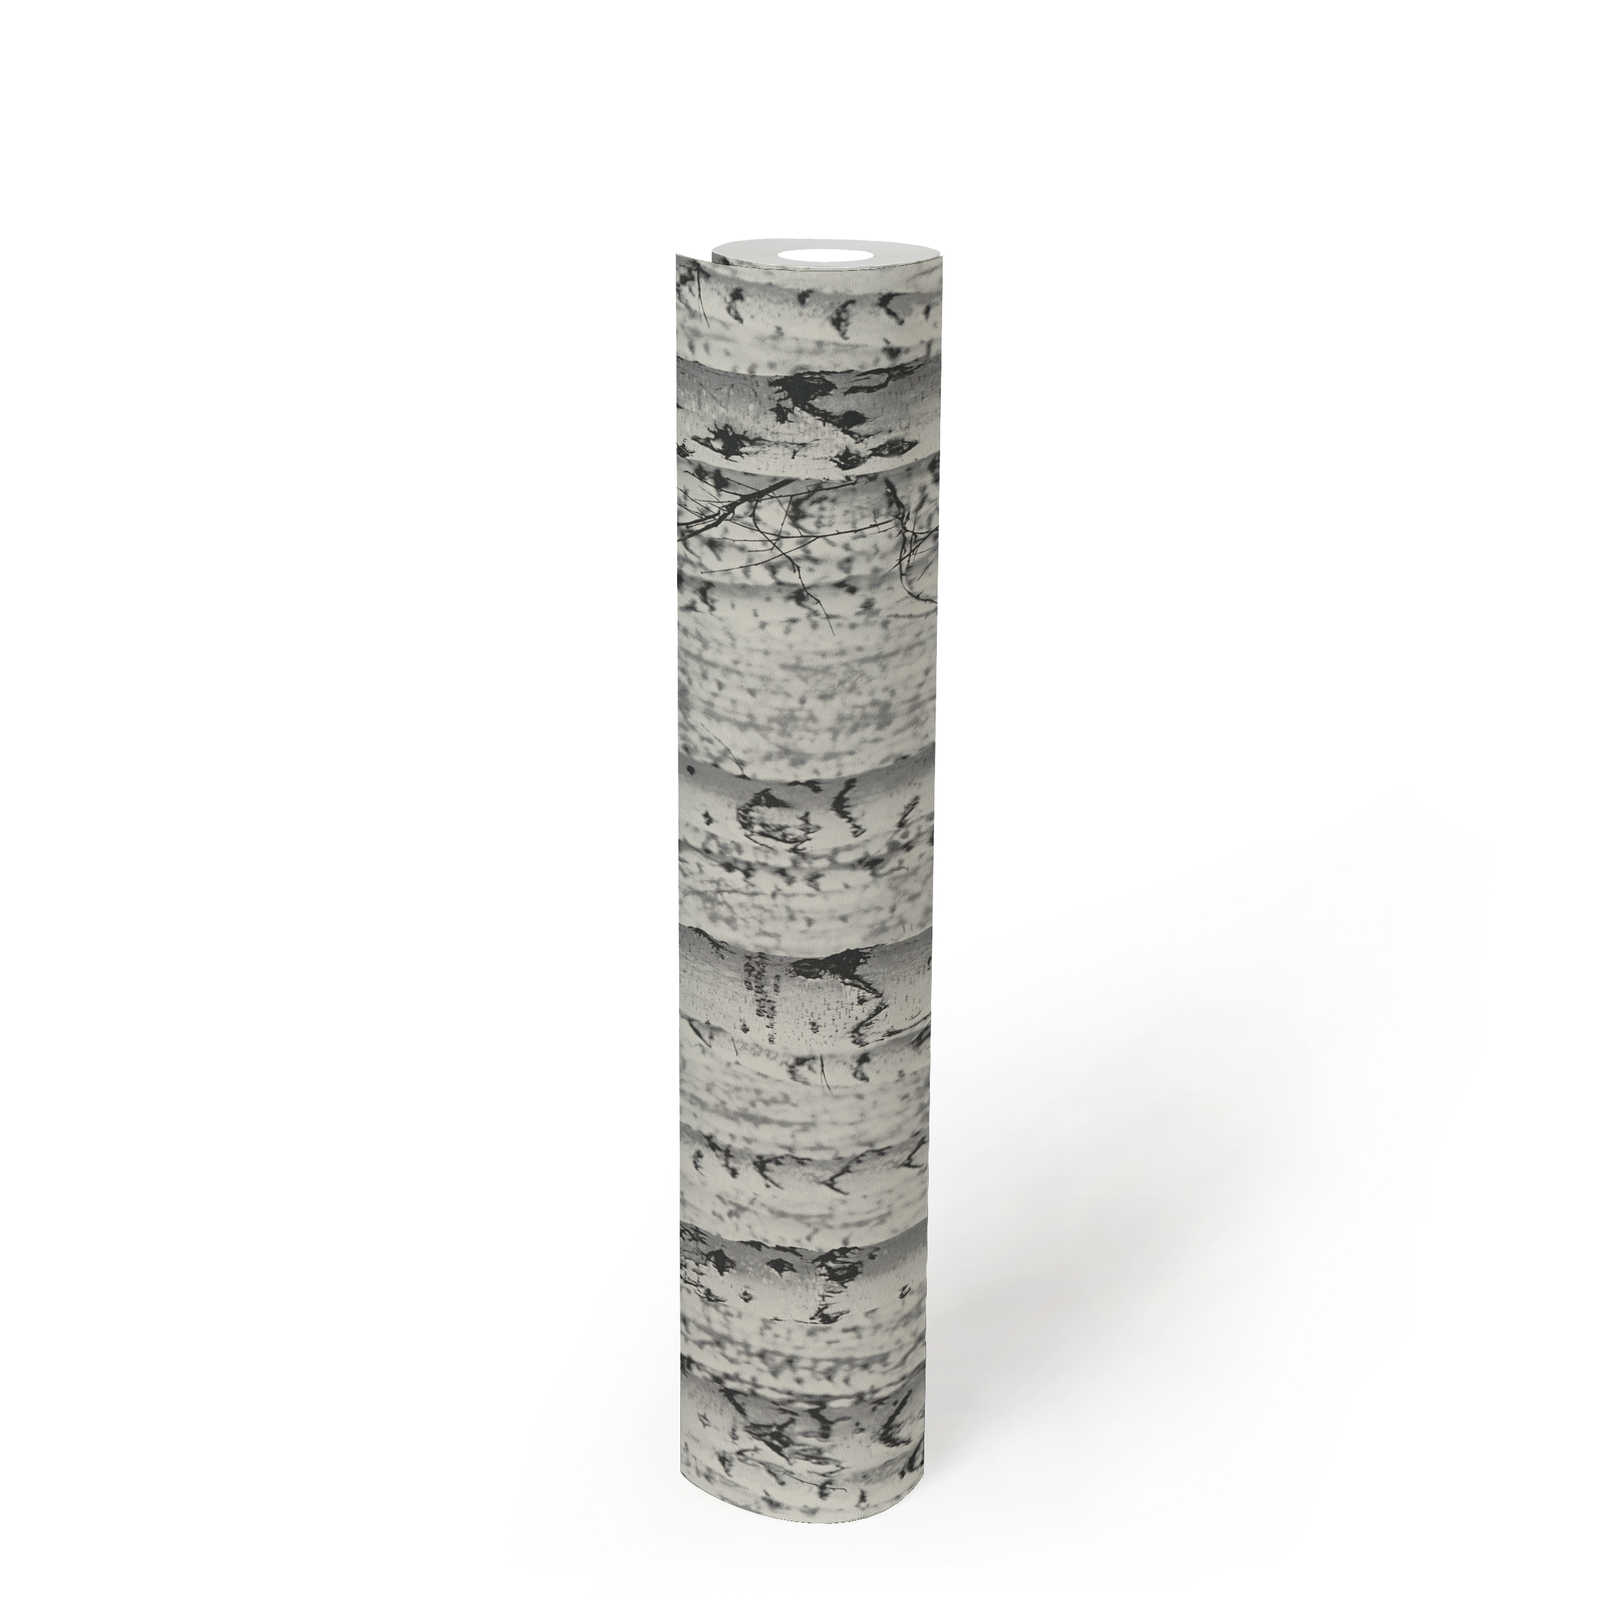             Schwarz-Weiß Tapete Birken-Wald 3D – Weiß, Schwarz
        